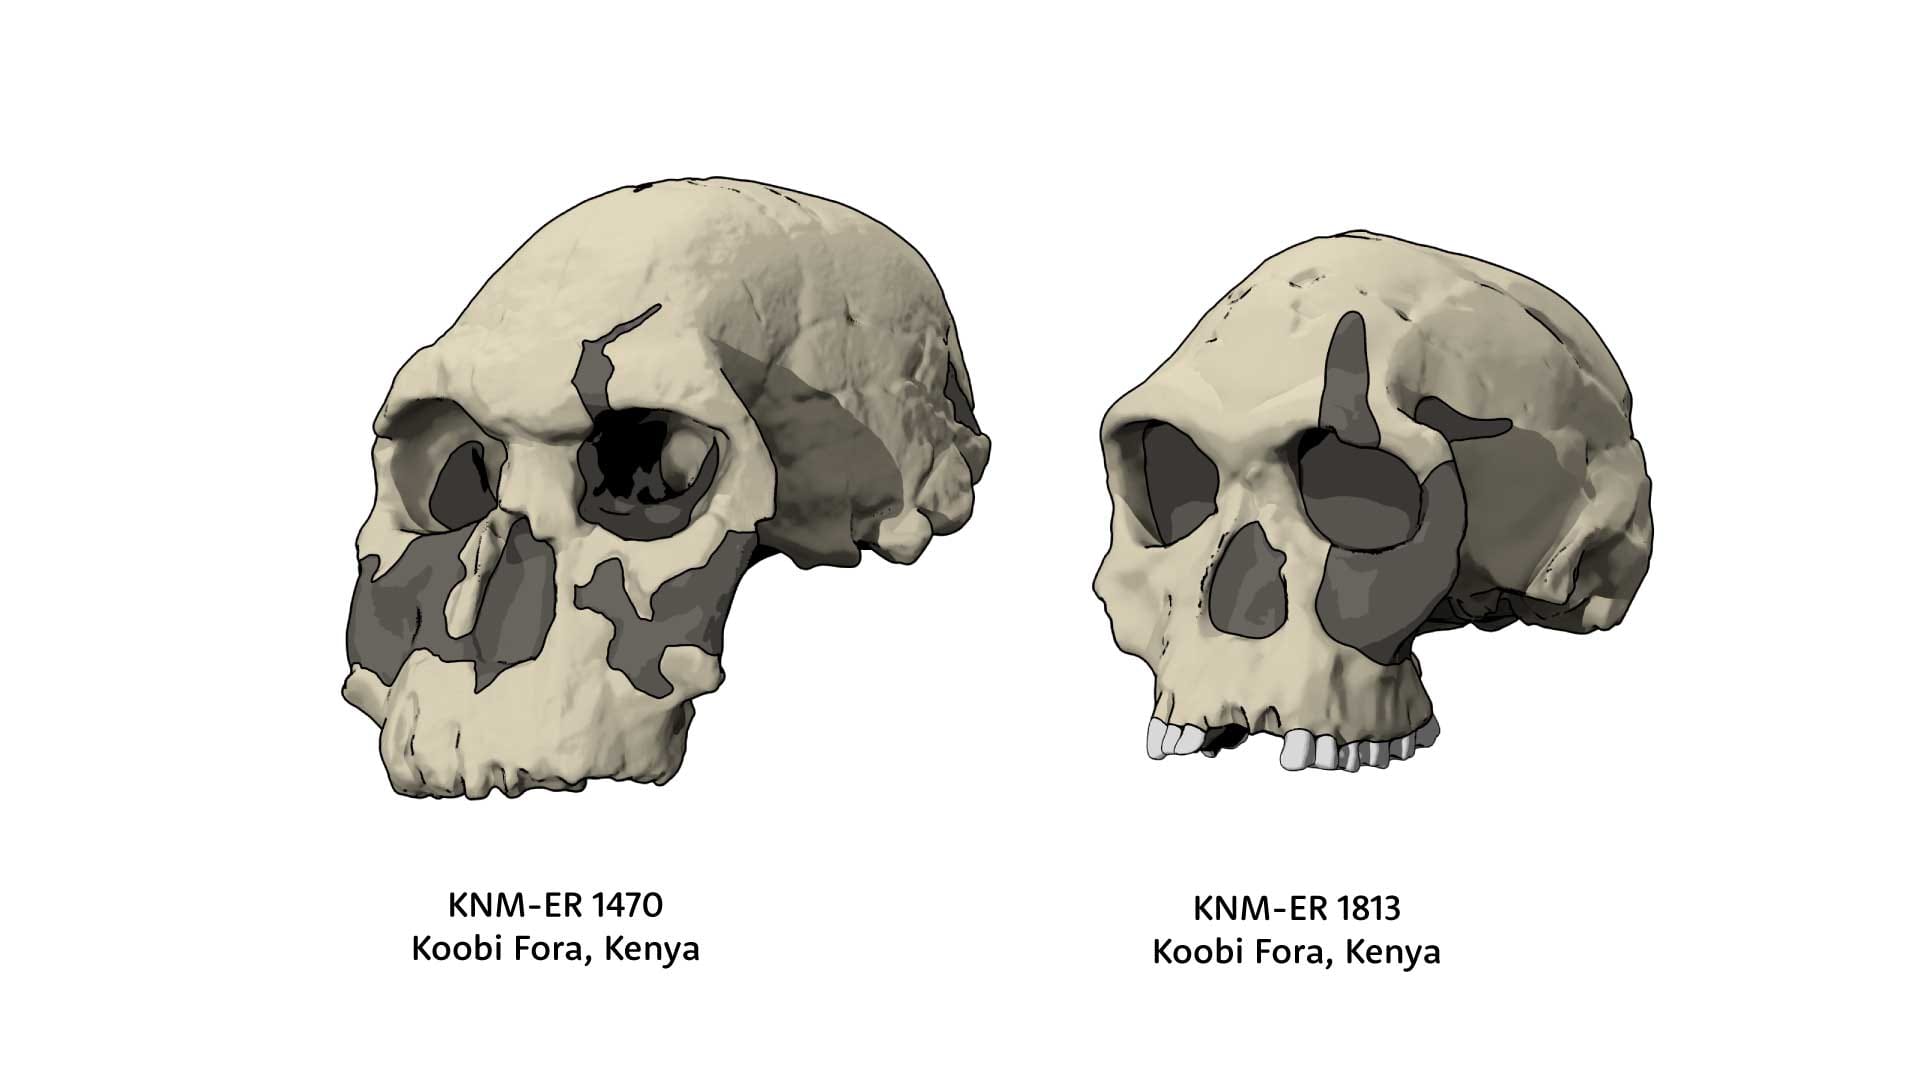 Oblique views of KNM-ER 1470 skull next to KNM-ER 1813 skull